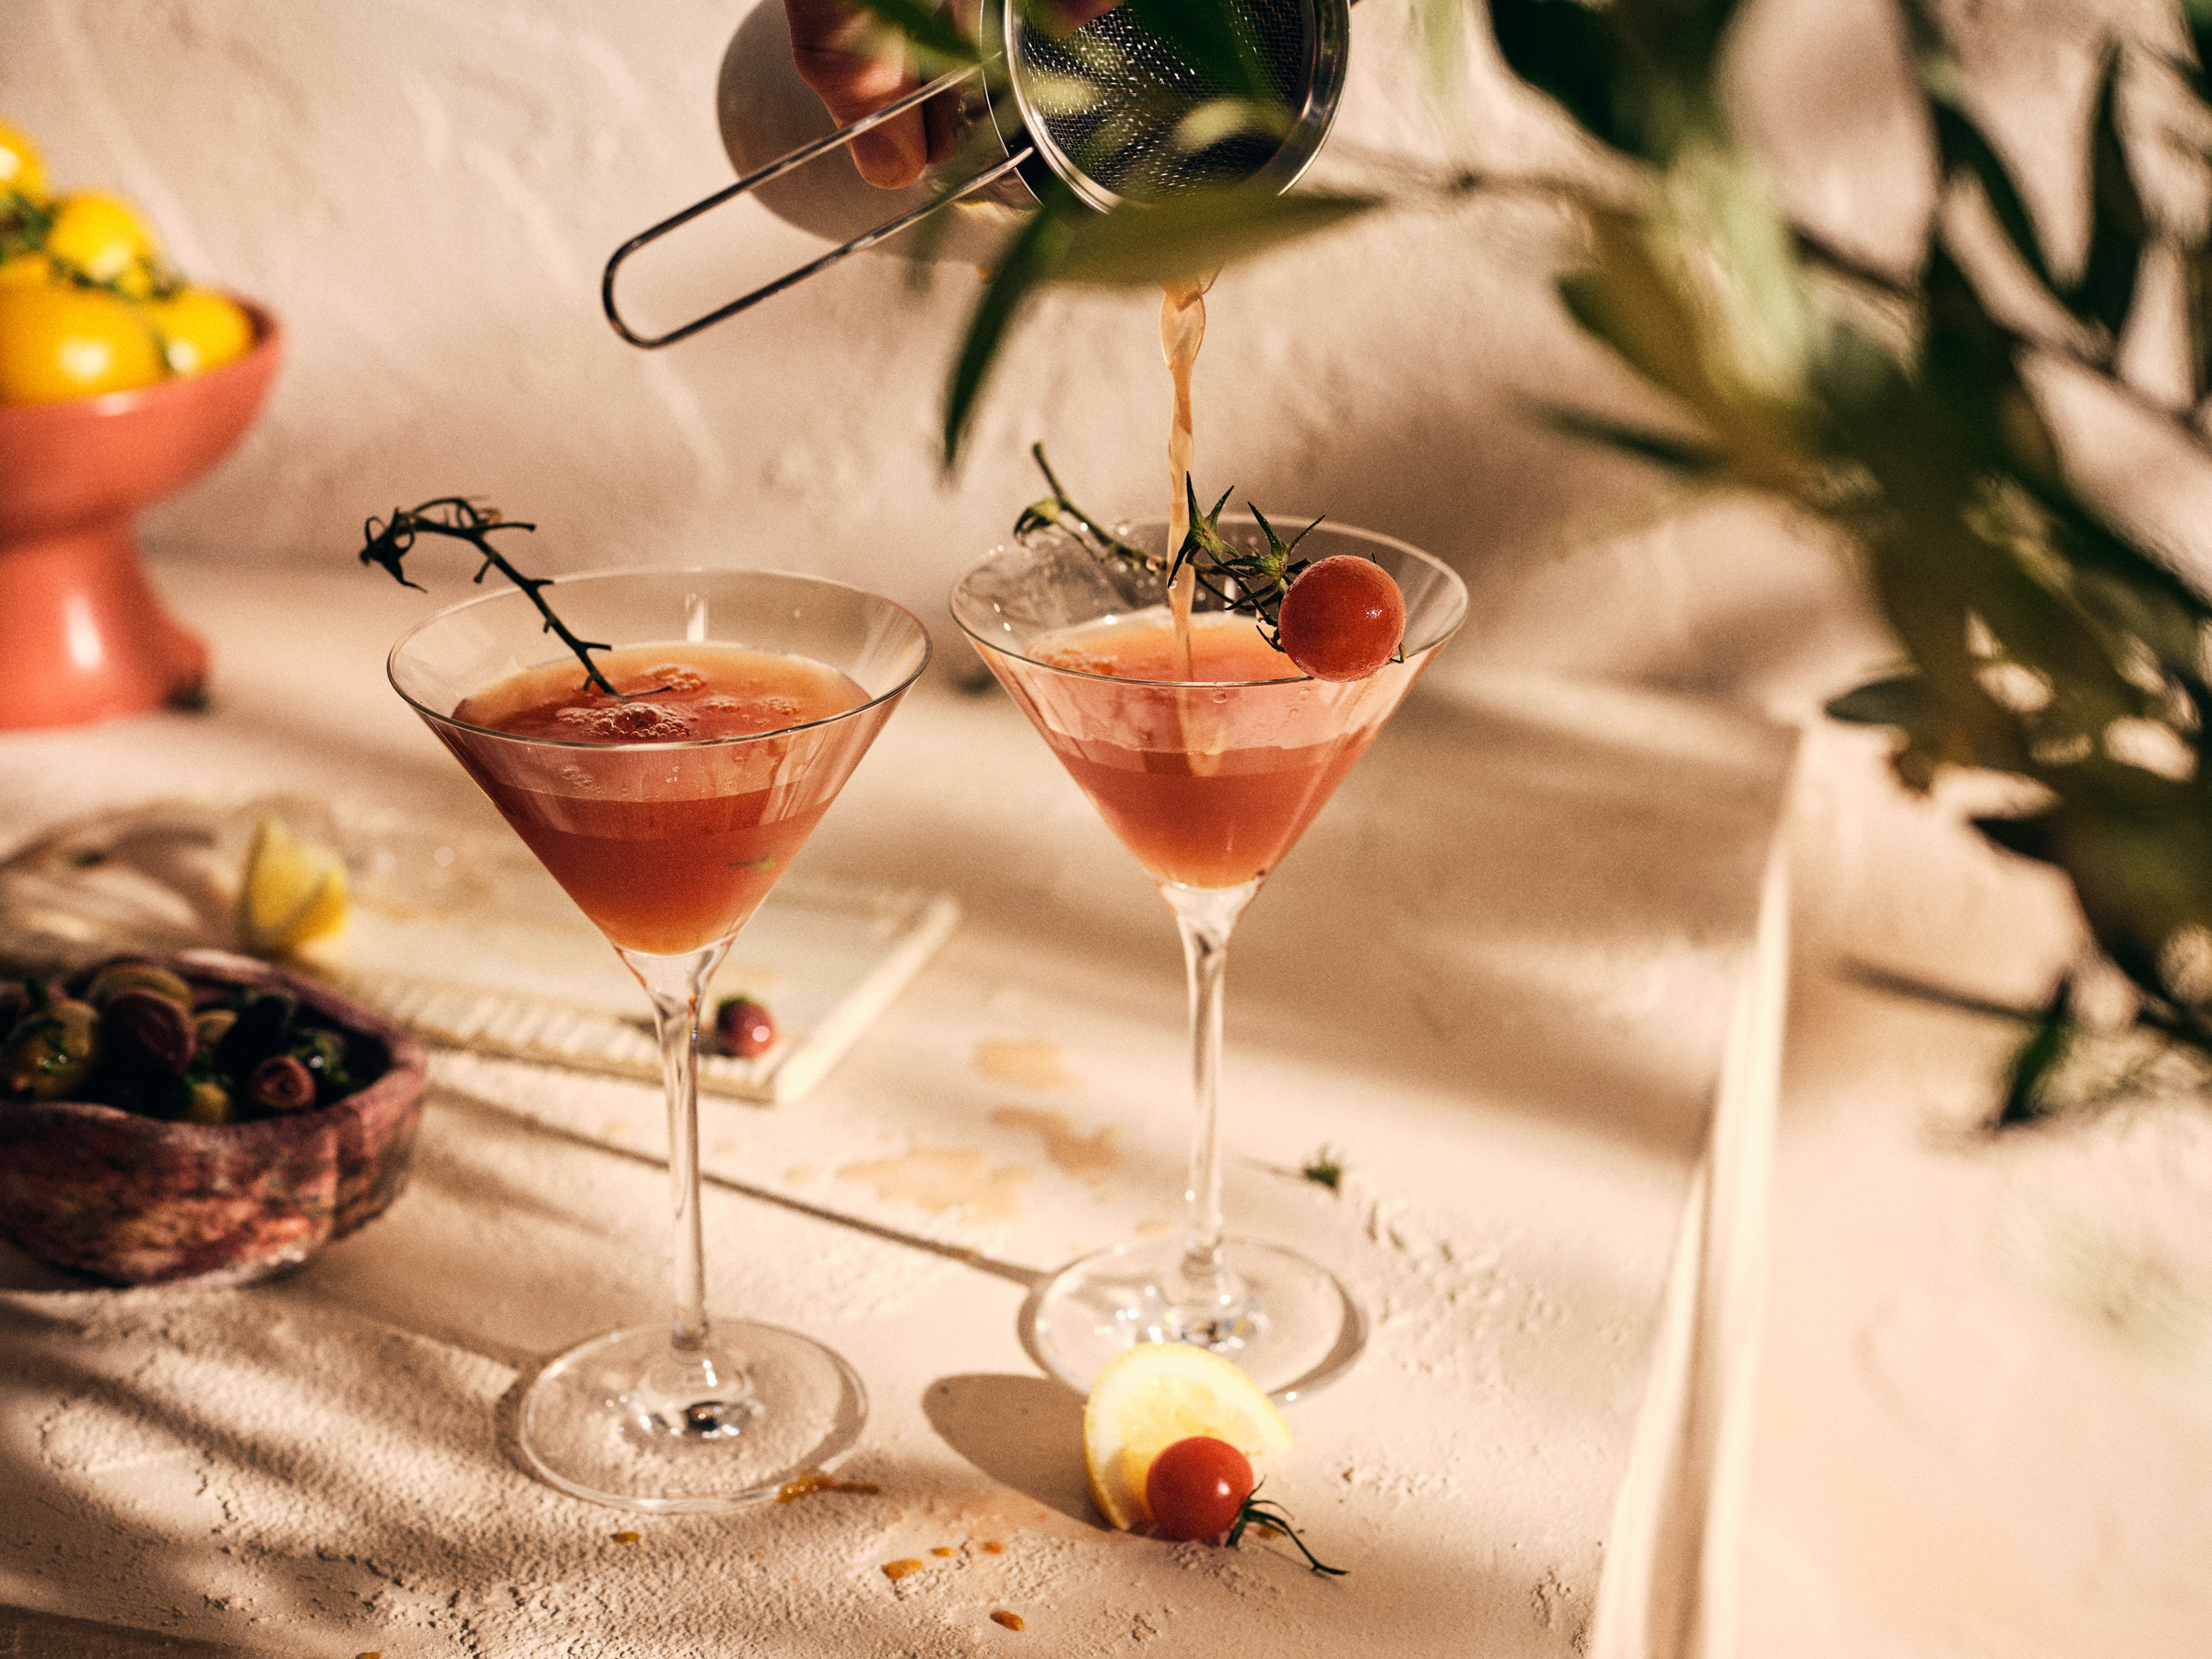 Totale von TASTE APPEAL– Rezept Tomaten-Martini mit Tomatenessenz im sommerlichen Setting, Hand schüttet Martini aus Shaker ein